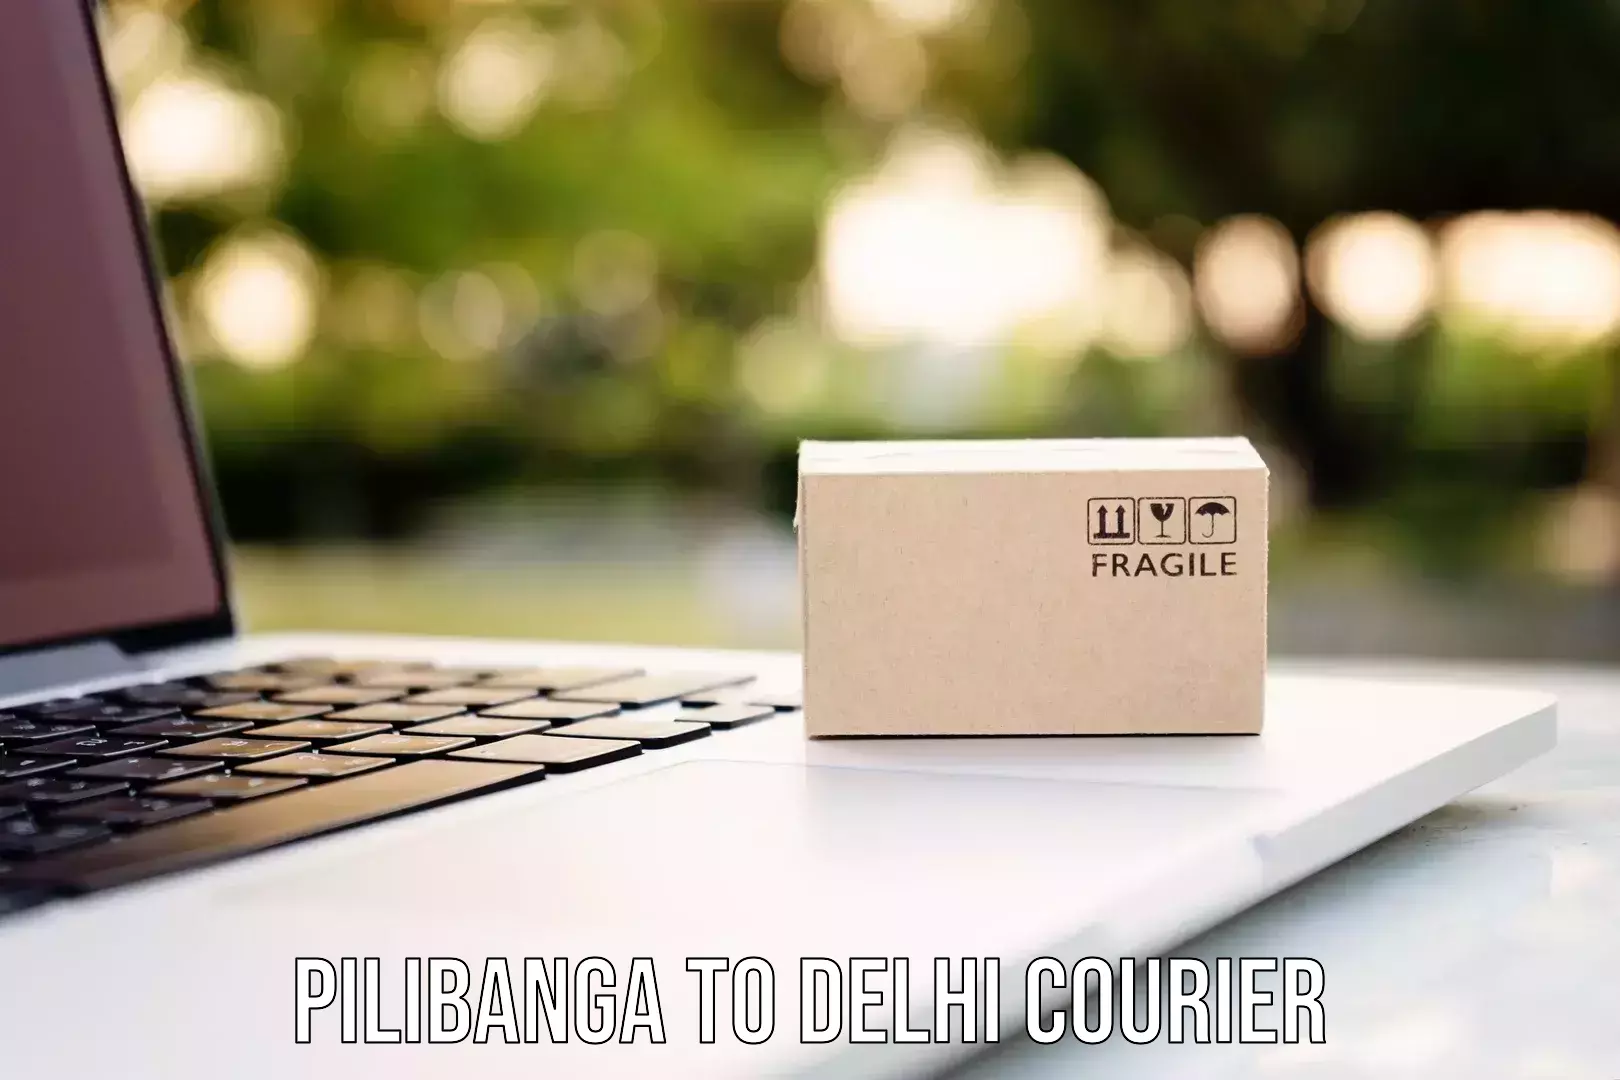 Courier membership Pilibanga to Jawaharlal Nehru University New Delhi